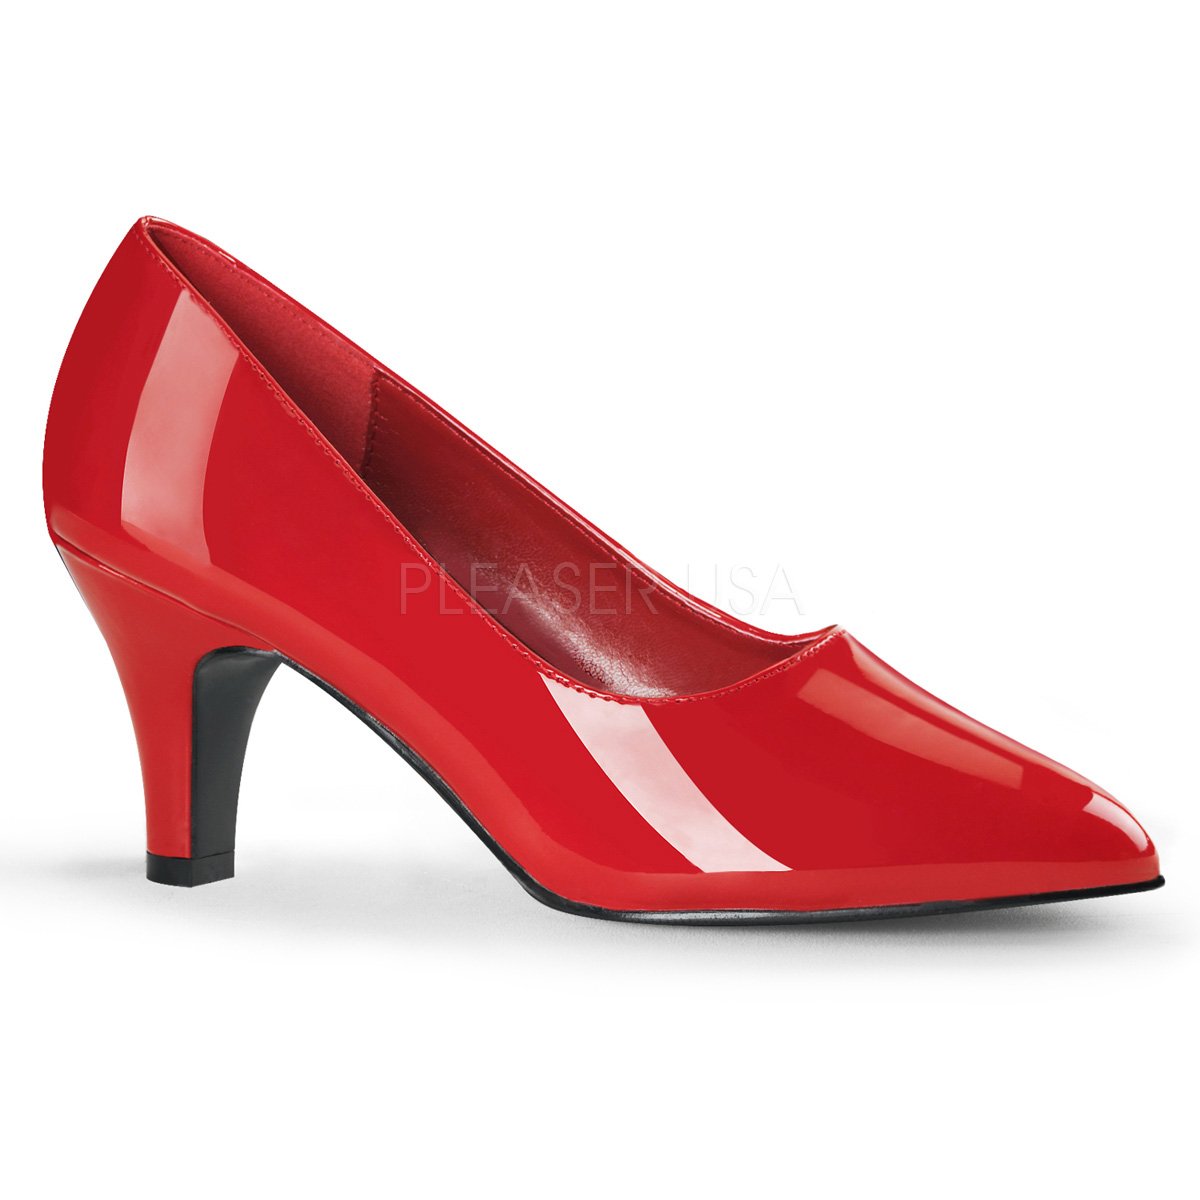 red pumps 3 inch heel